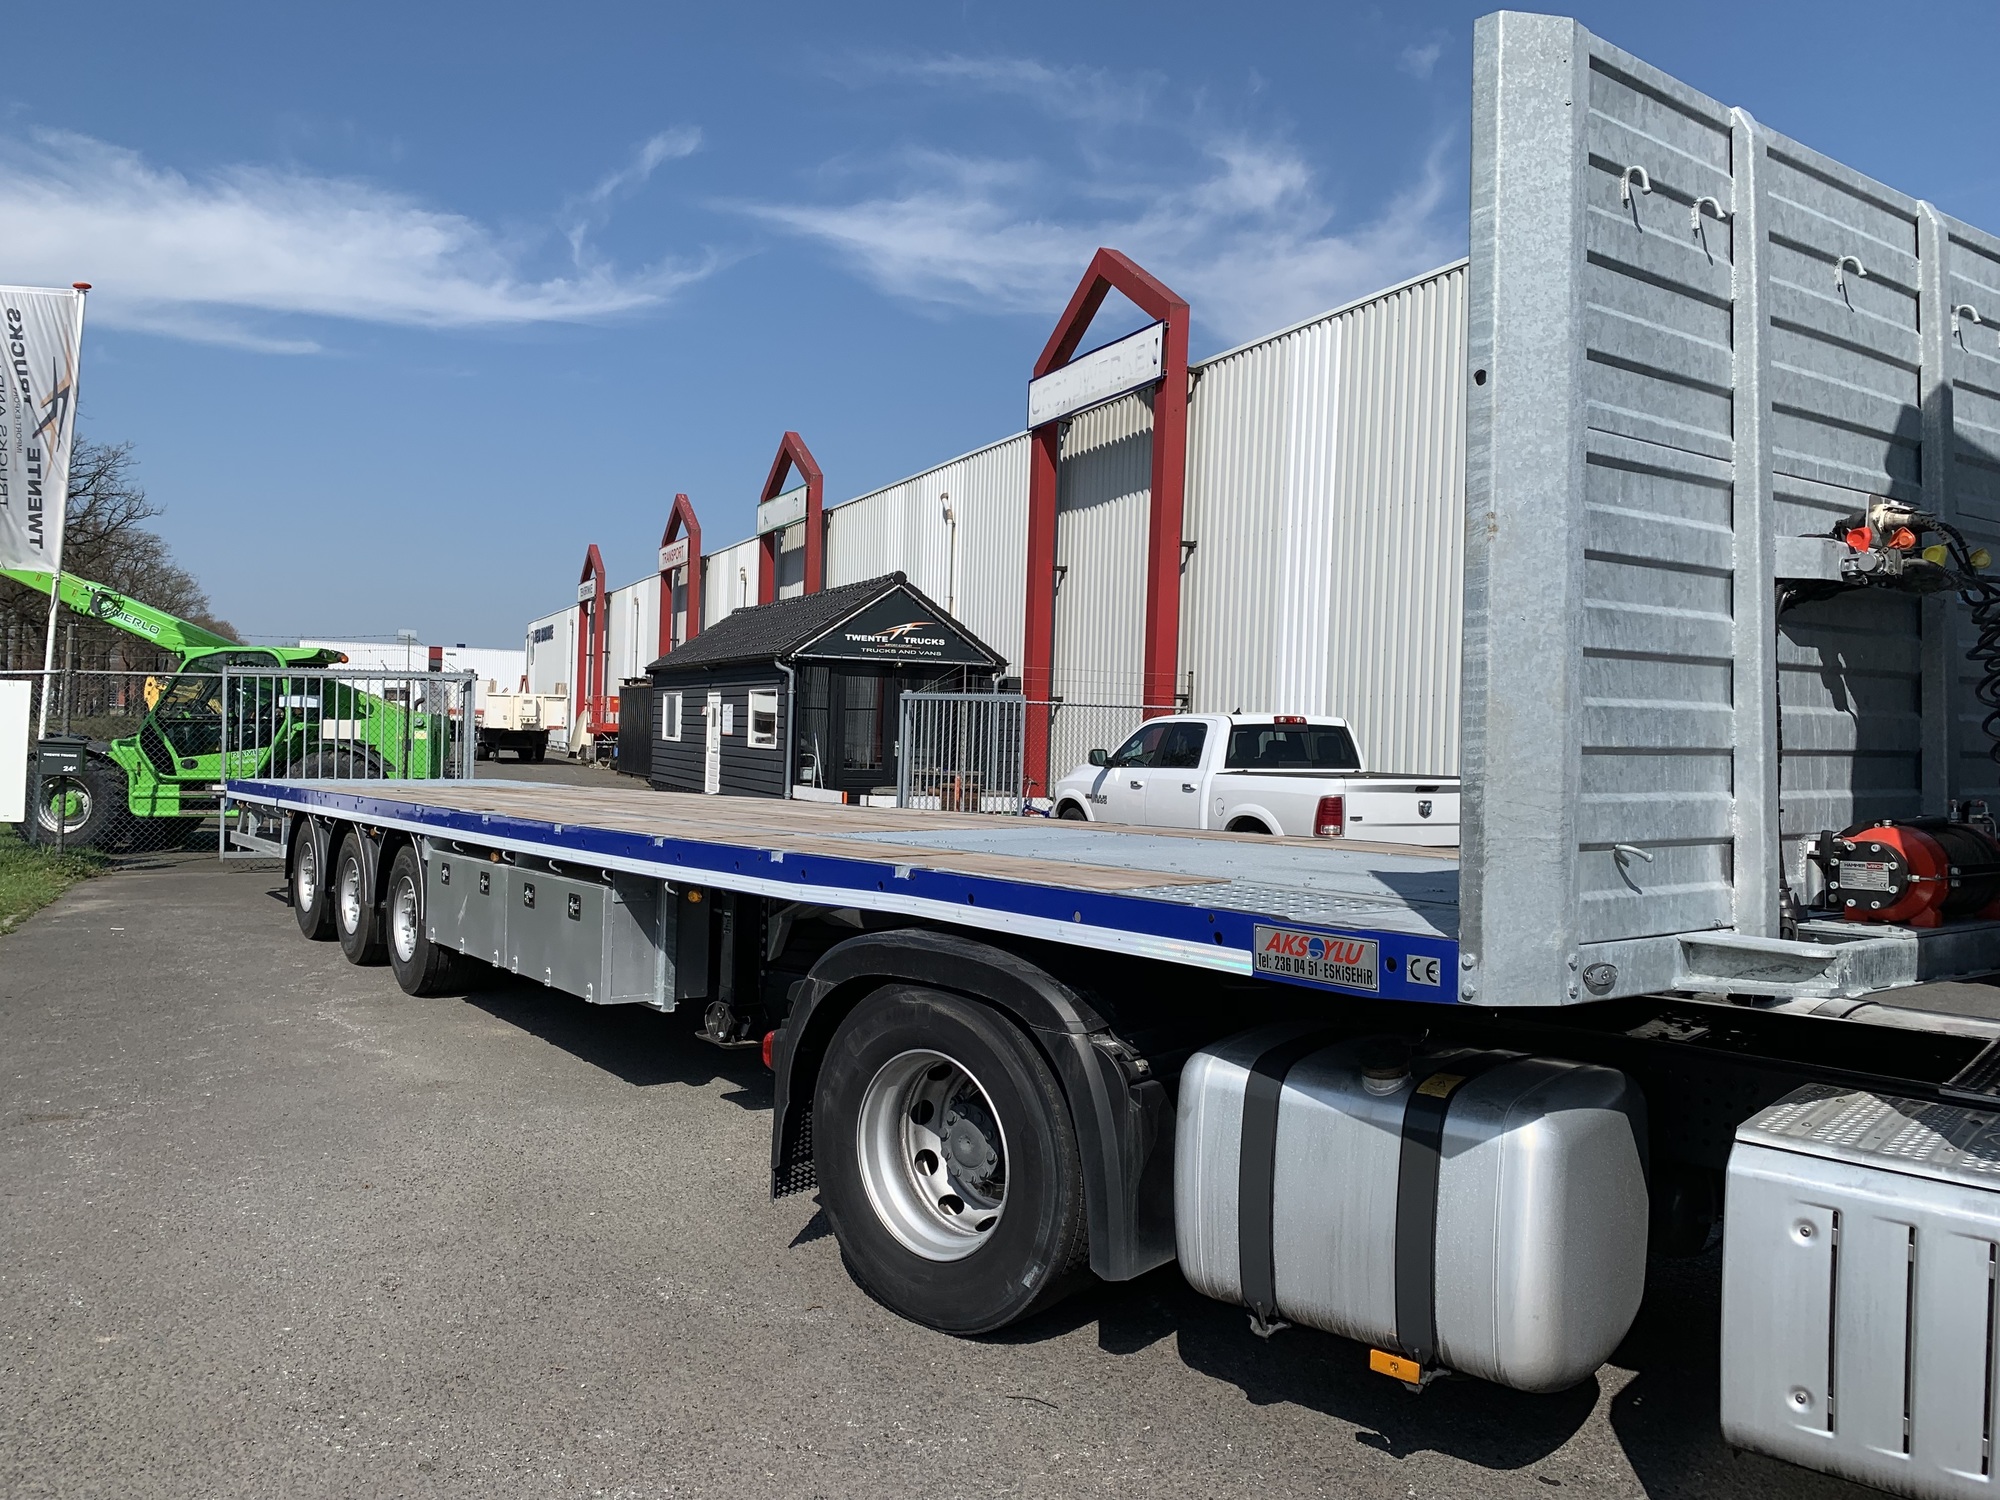 Twente Trucks undefined: صور 2